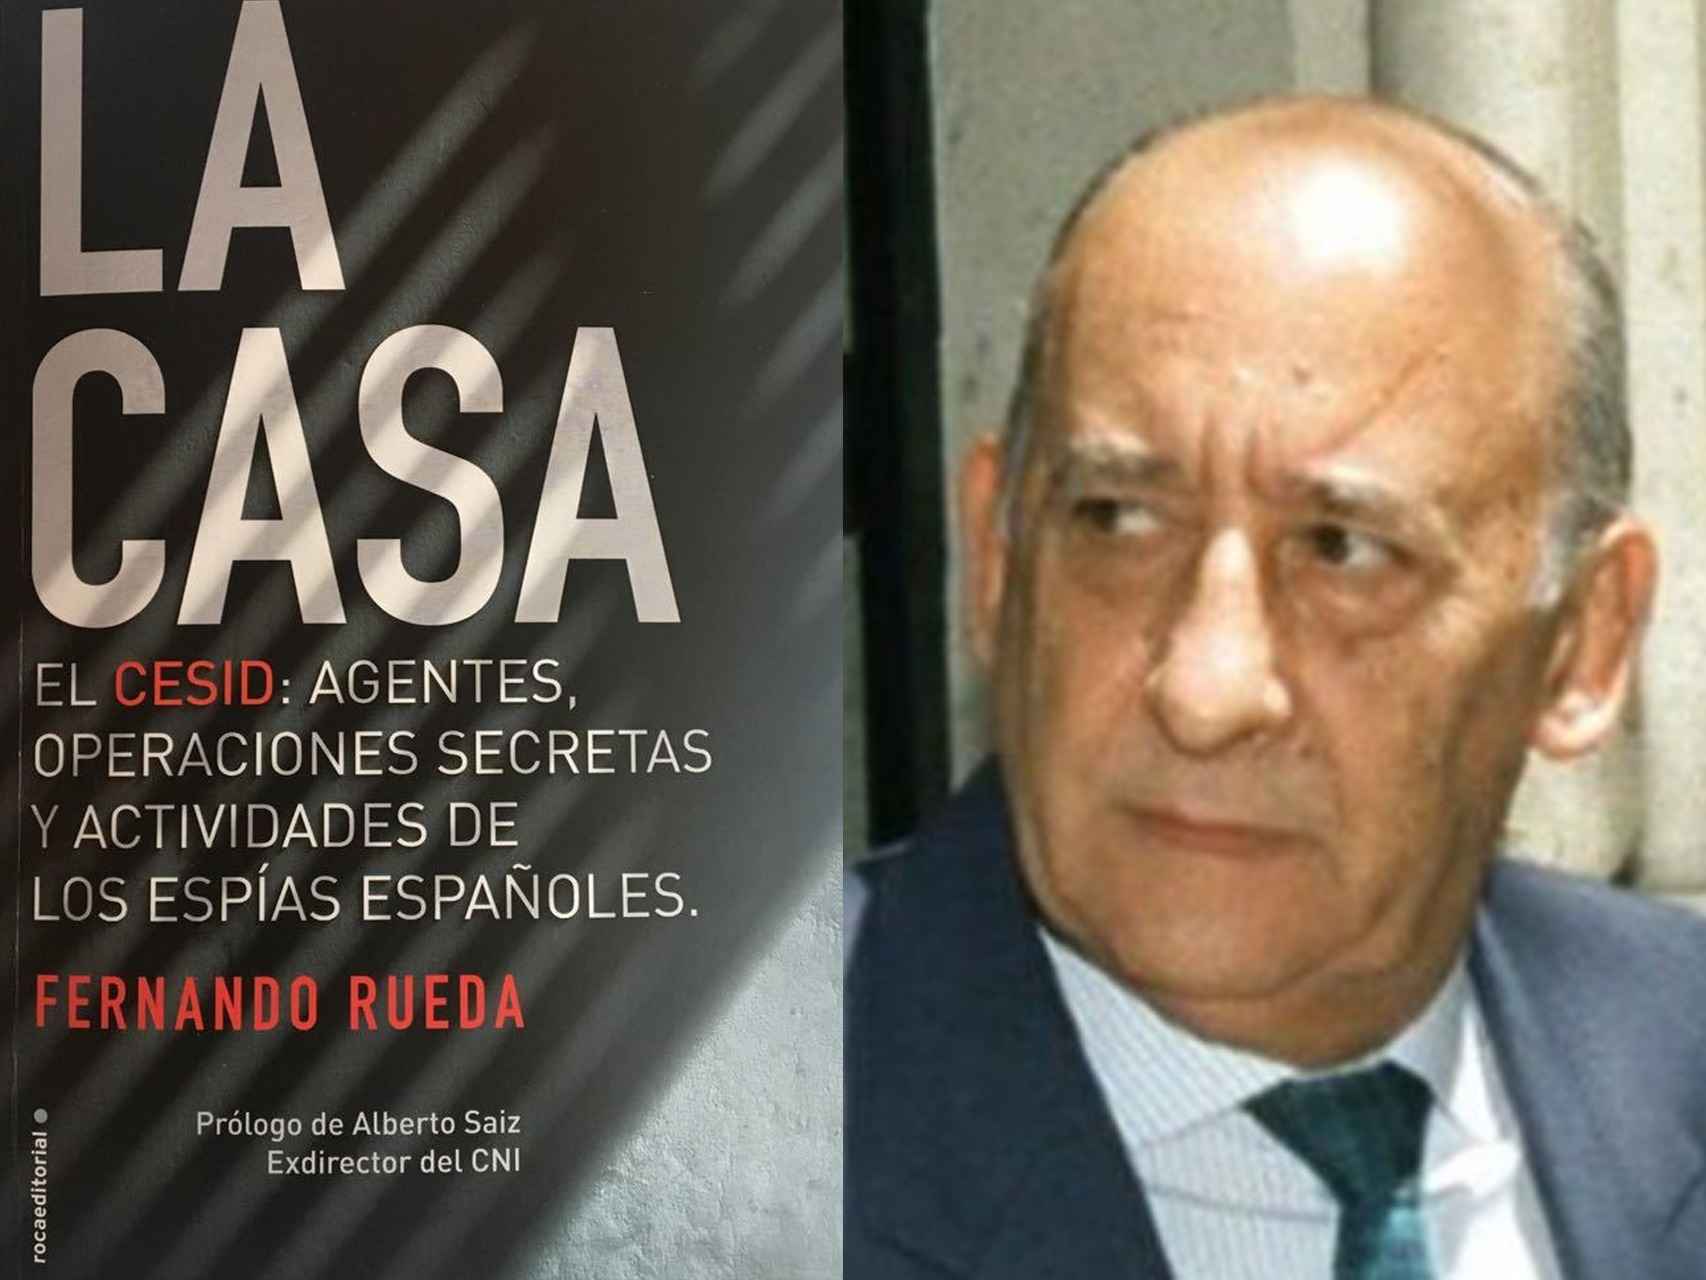 A la izquierda, la portada del libro La Casa. A la derecha, Emilio Alonso Manglano, que fue director del CESID de 1981 a 1995. Falleció en julio de 2013.